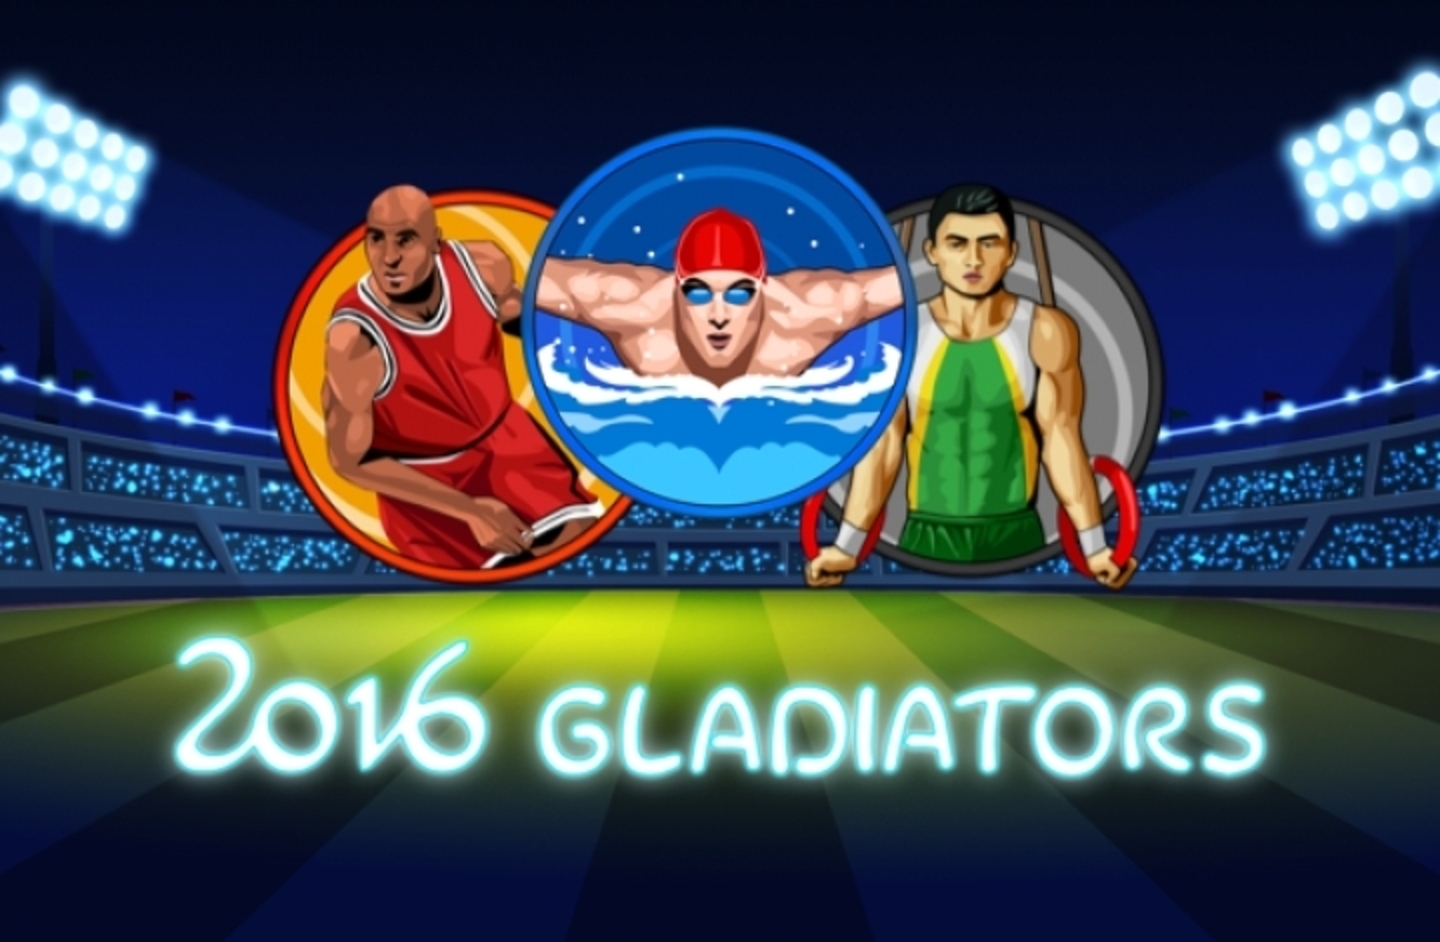 2016 Gladiators Slot Machine By Endorphina ✅ Bonus Round (Free Spin) Gameplay ⏩ DeluxeCasinoBonus